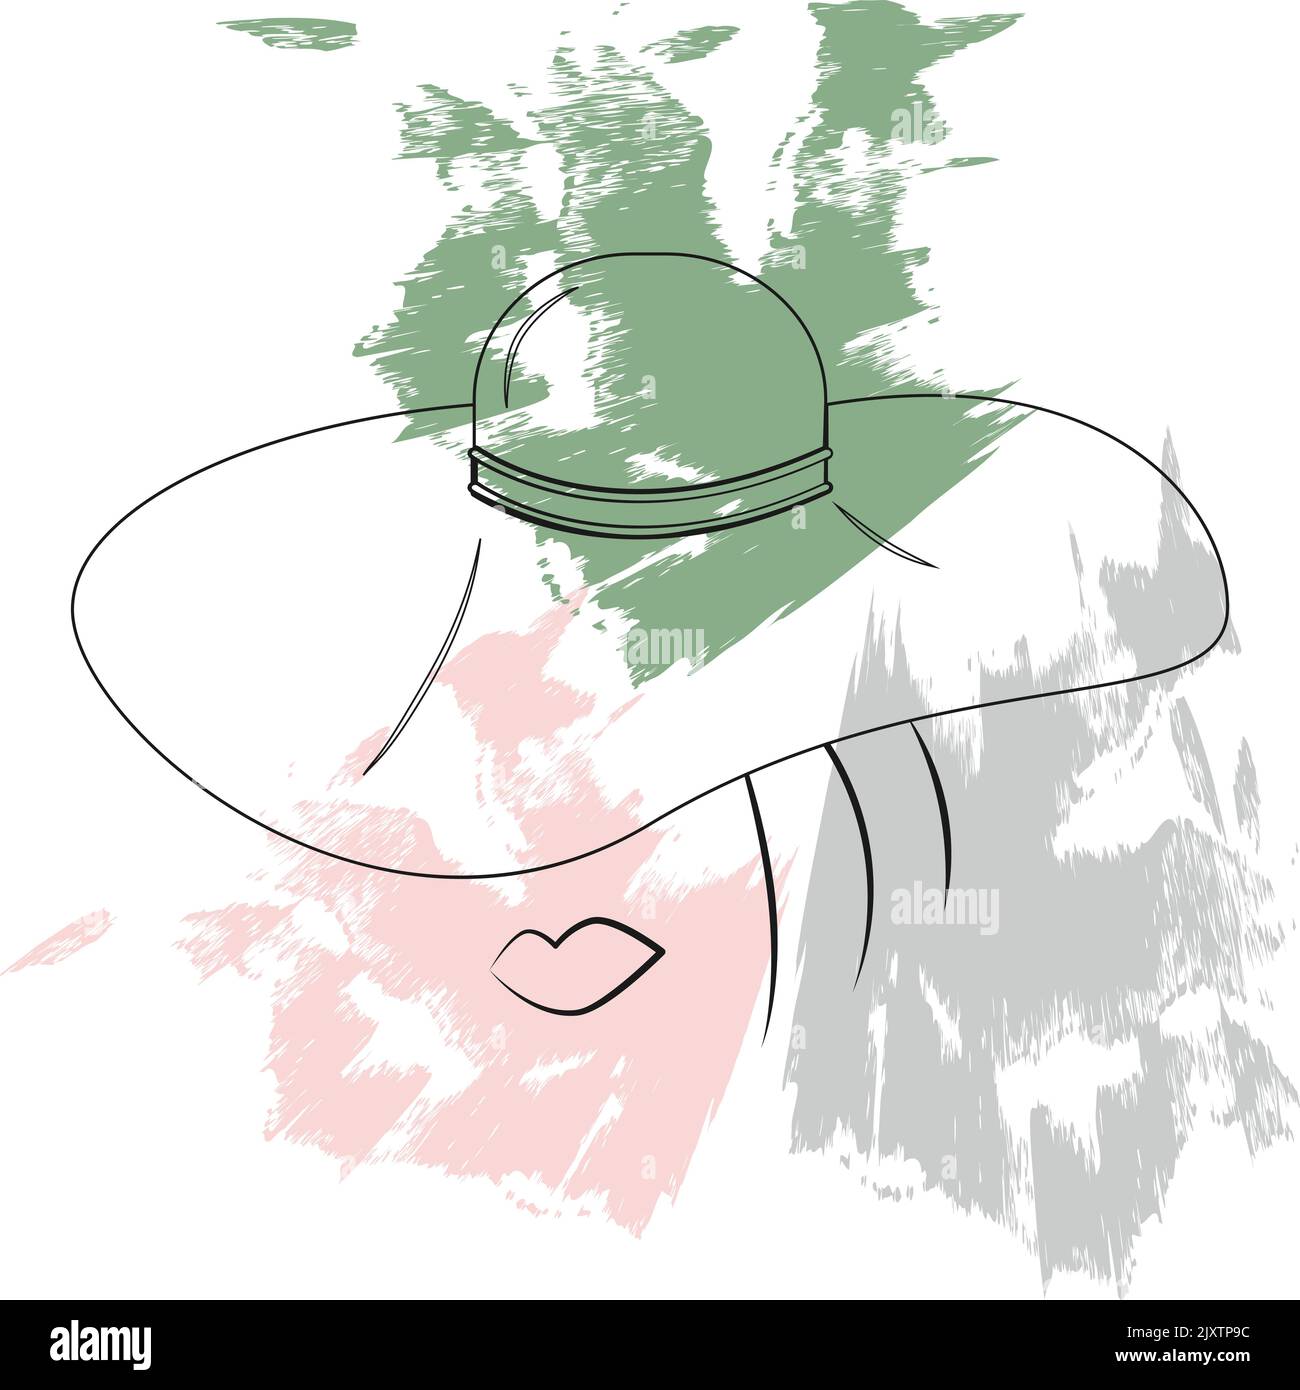 Eine abstrakte stilisierte Zeichnung eines Frauengesichts in einem Hut auf einem Hintergrund mit farbigen Punkten in trendigen Farbtönen im handgezeichneten Stil. Gliederung. Silhouette. Geeignet für Logo, Poster, Broschüre, Schild Stock Vektor